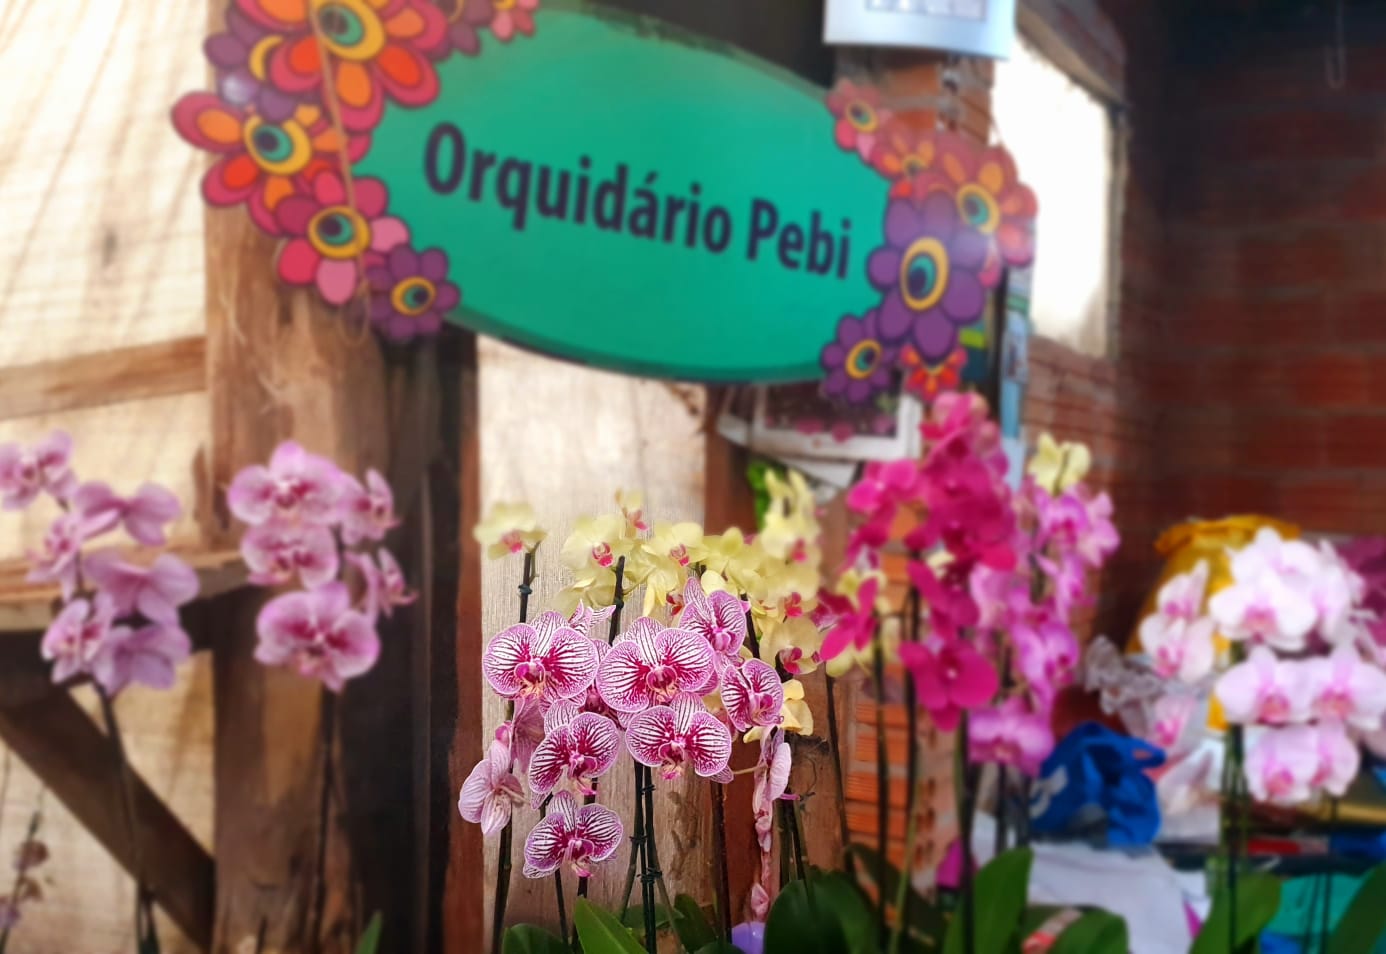 Orquidário e Pitayas Pebi